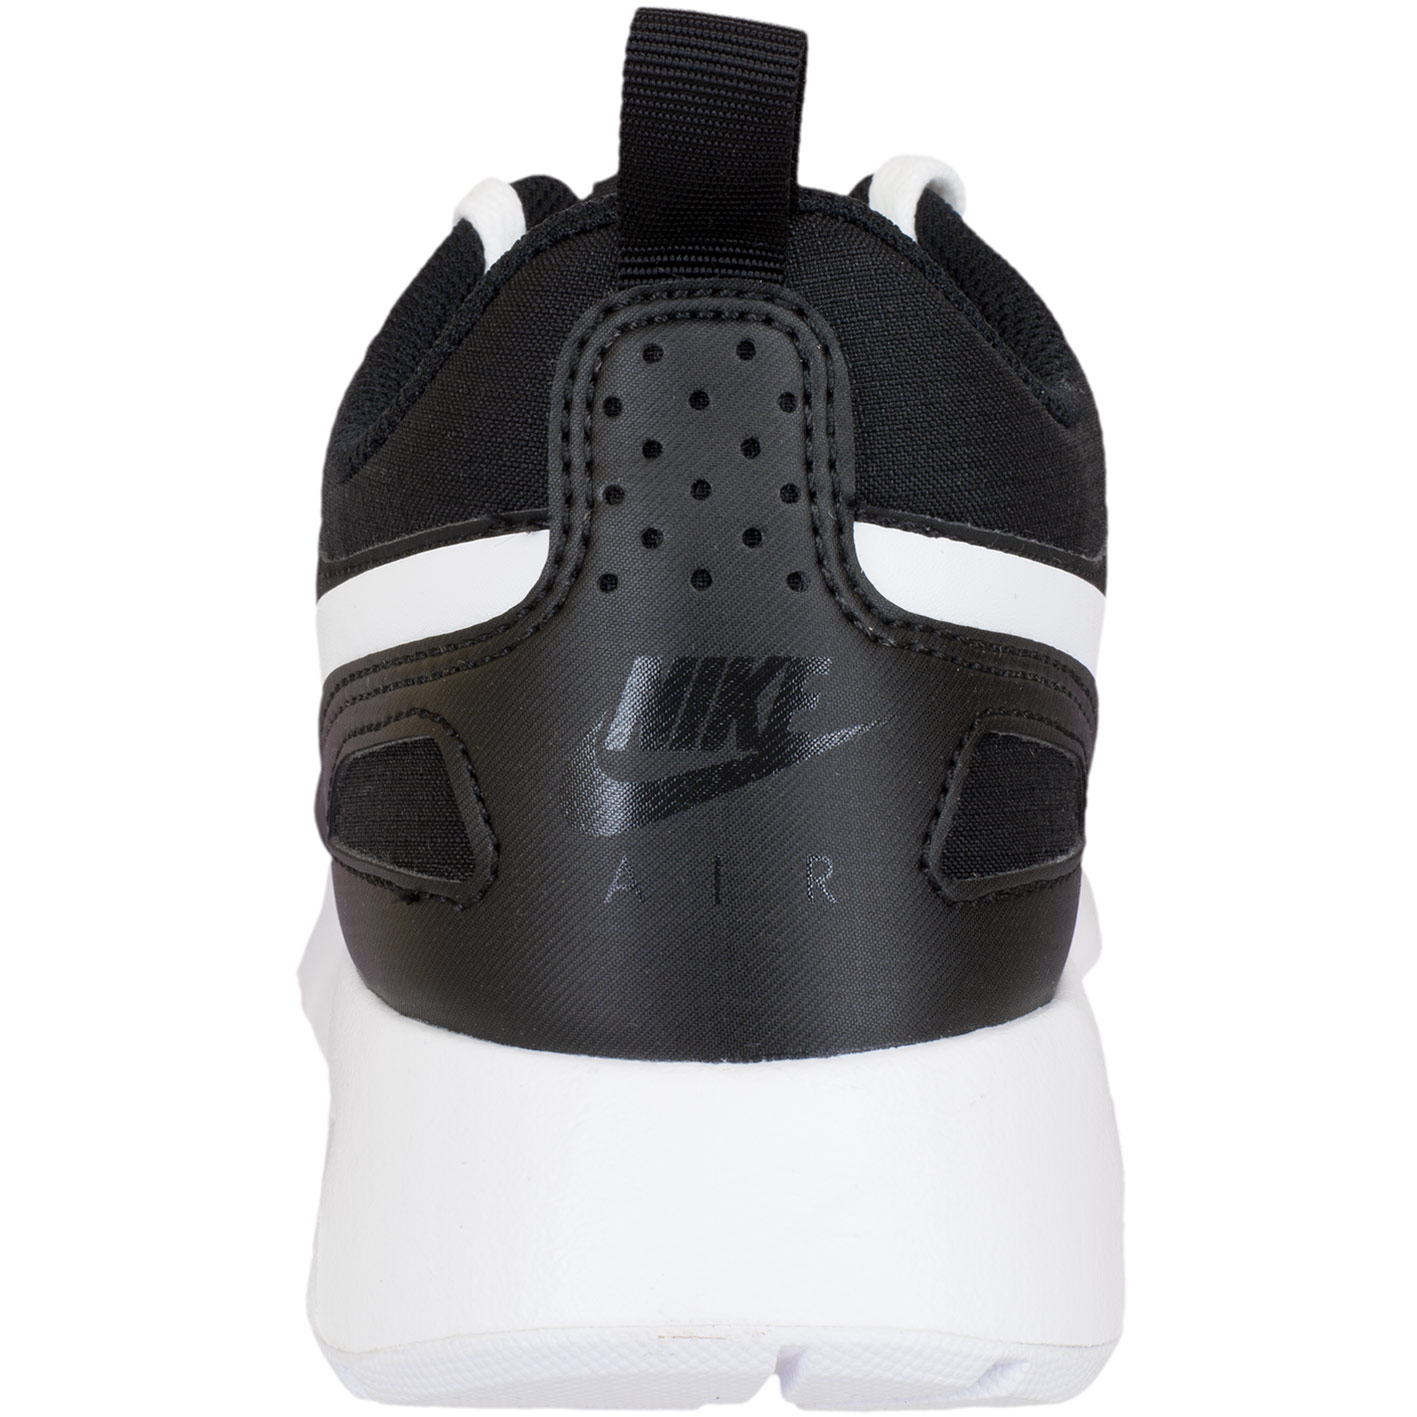 ☆ Nike Sneaker Air Max Vision schwarz/weiß - hier bestellen!